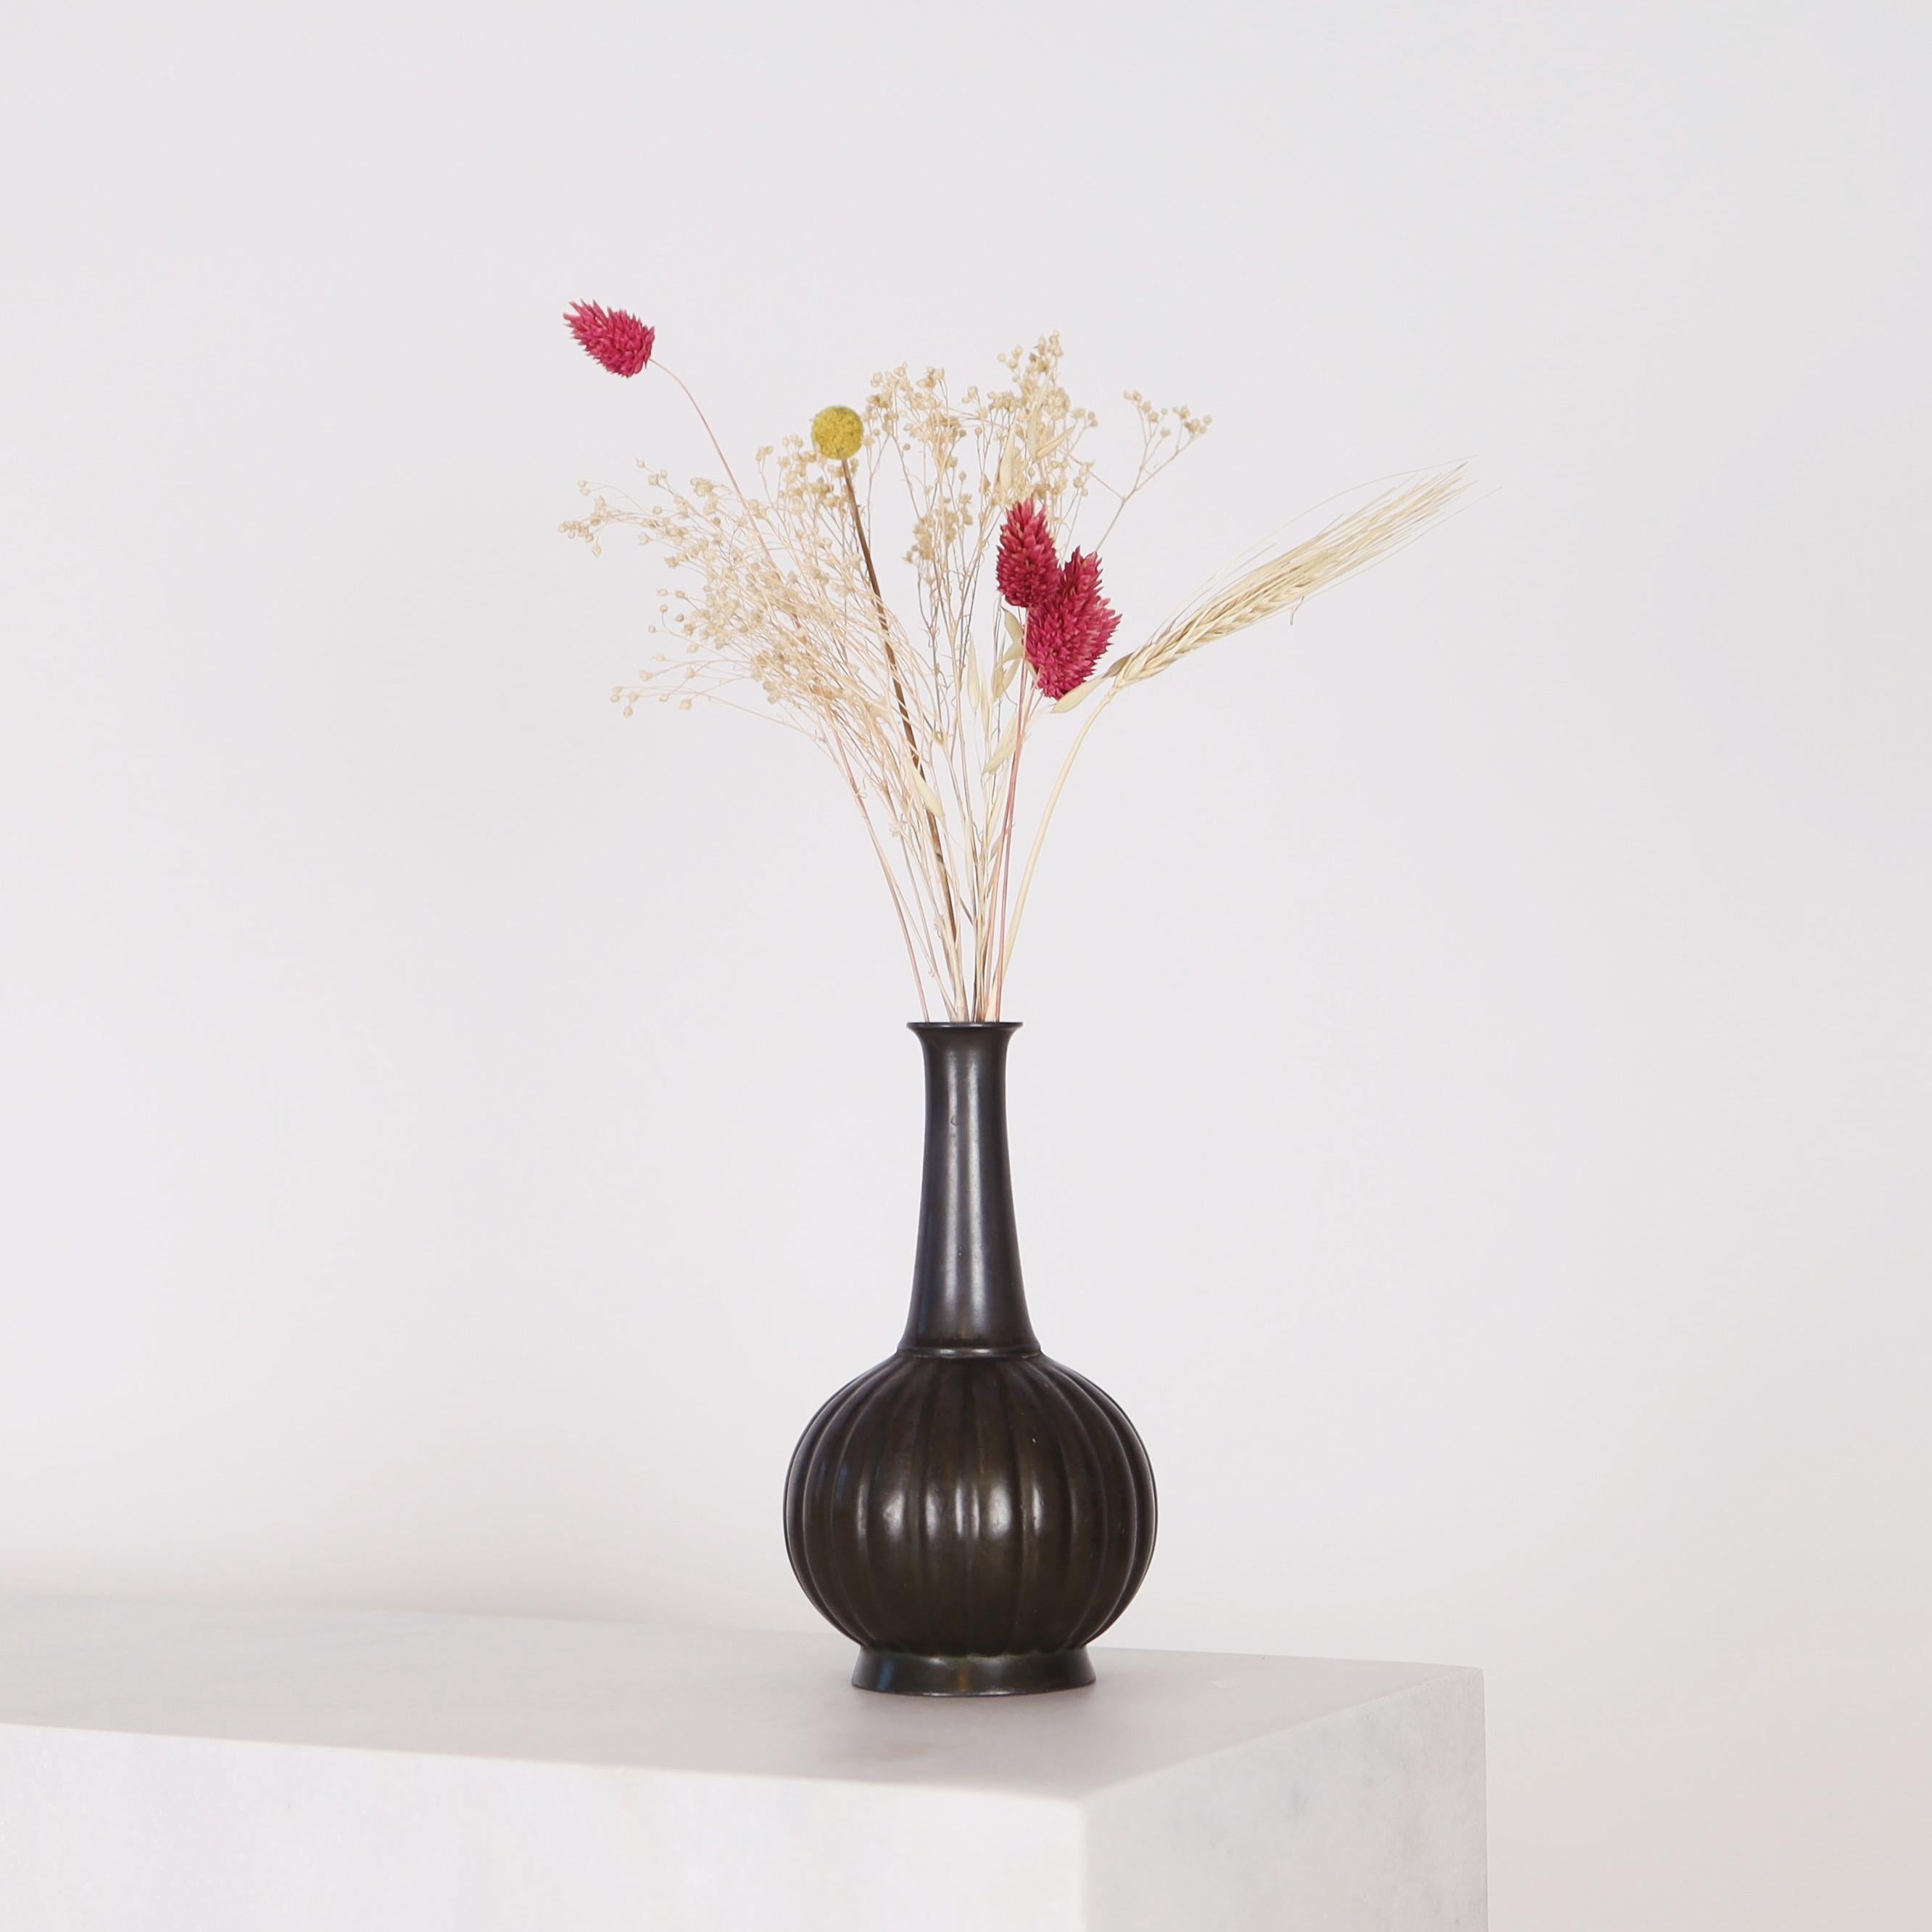 Un vase en métal conçu par Just Andersen dans les années 1920 en bon état vintage. 

* Un vase en métal en forme de bouteille avec des lignes verticales sur la base ronde.
* Designer : Just Andersen
* Modèle : D134 (estampillé 